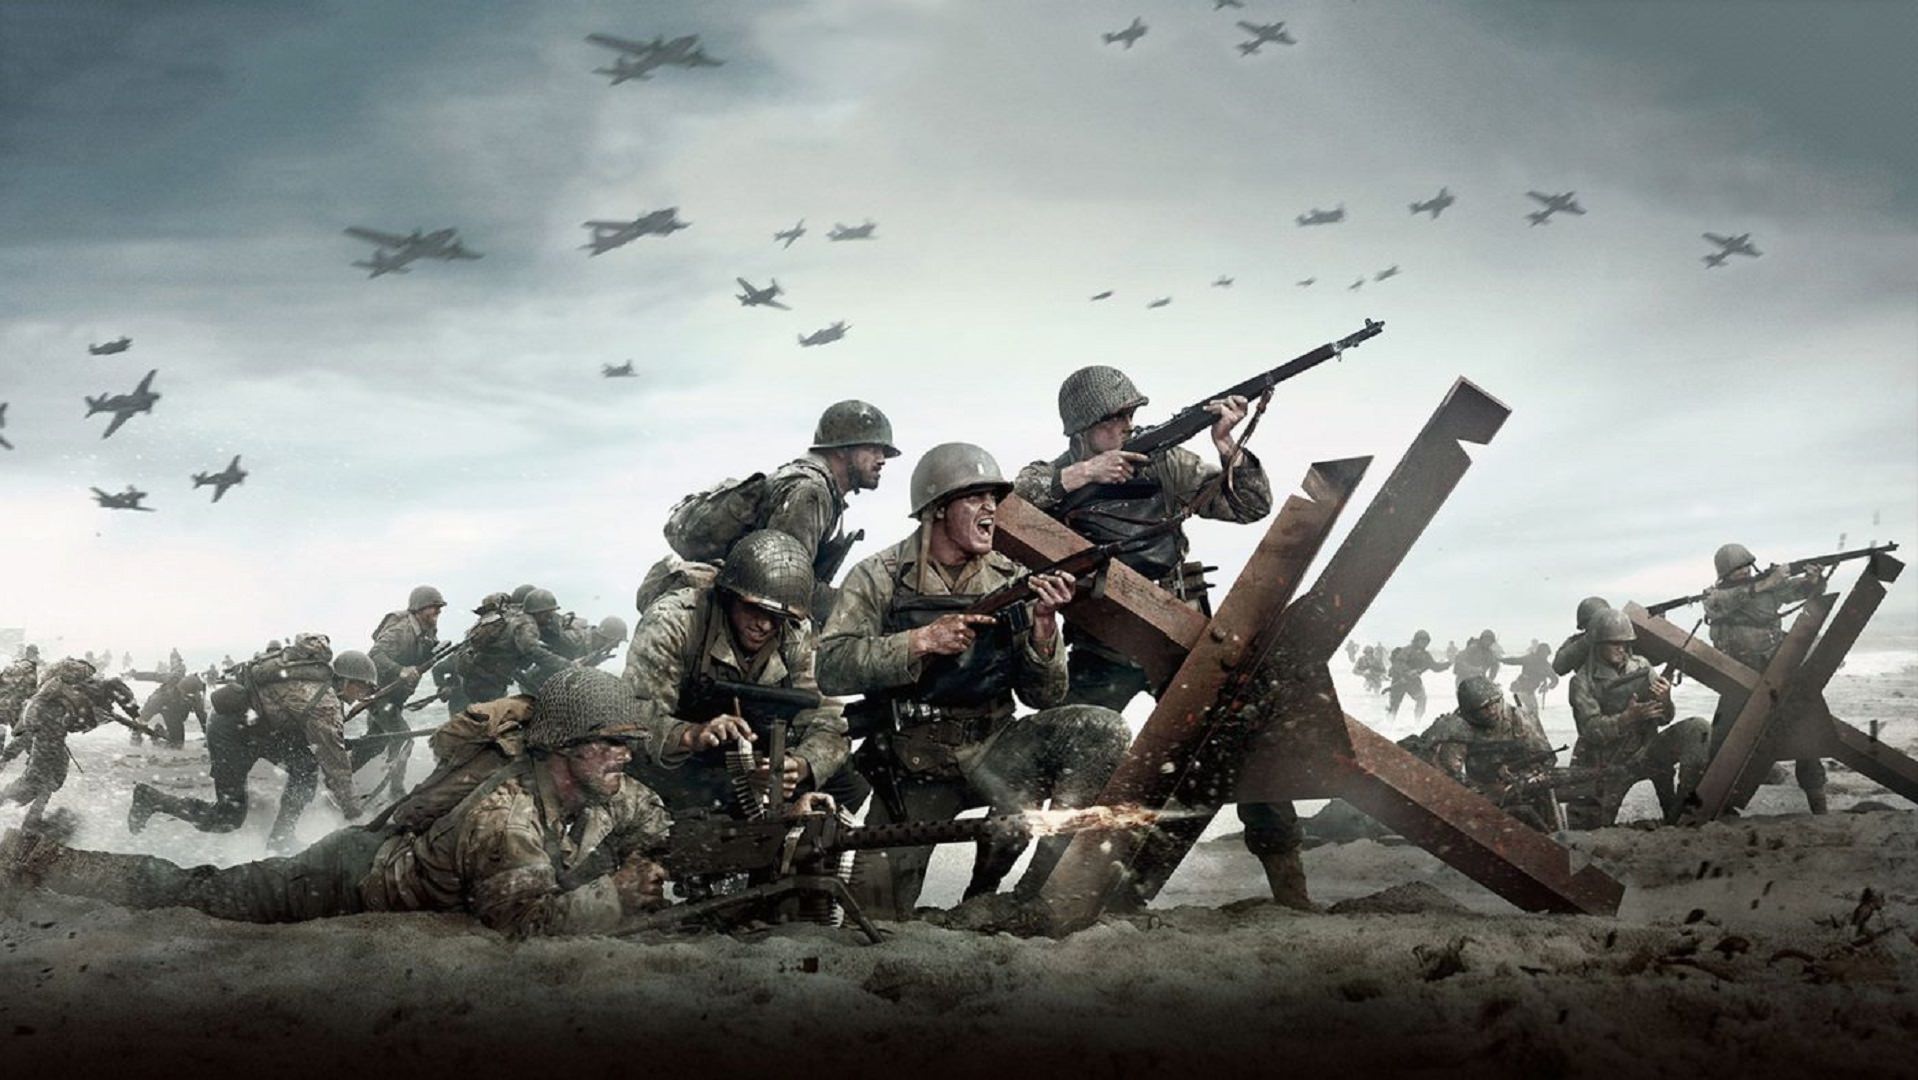 نسخه تست آلفا بازی جدید Call of Duty در Battle.net و PSN دیده شد